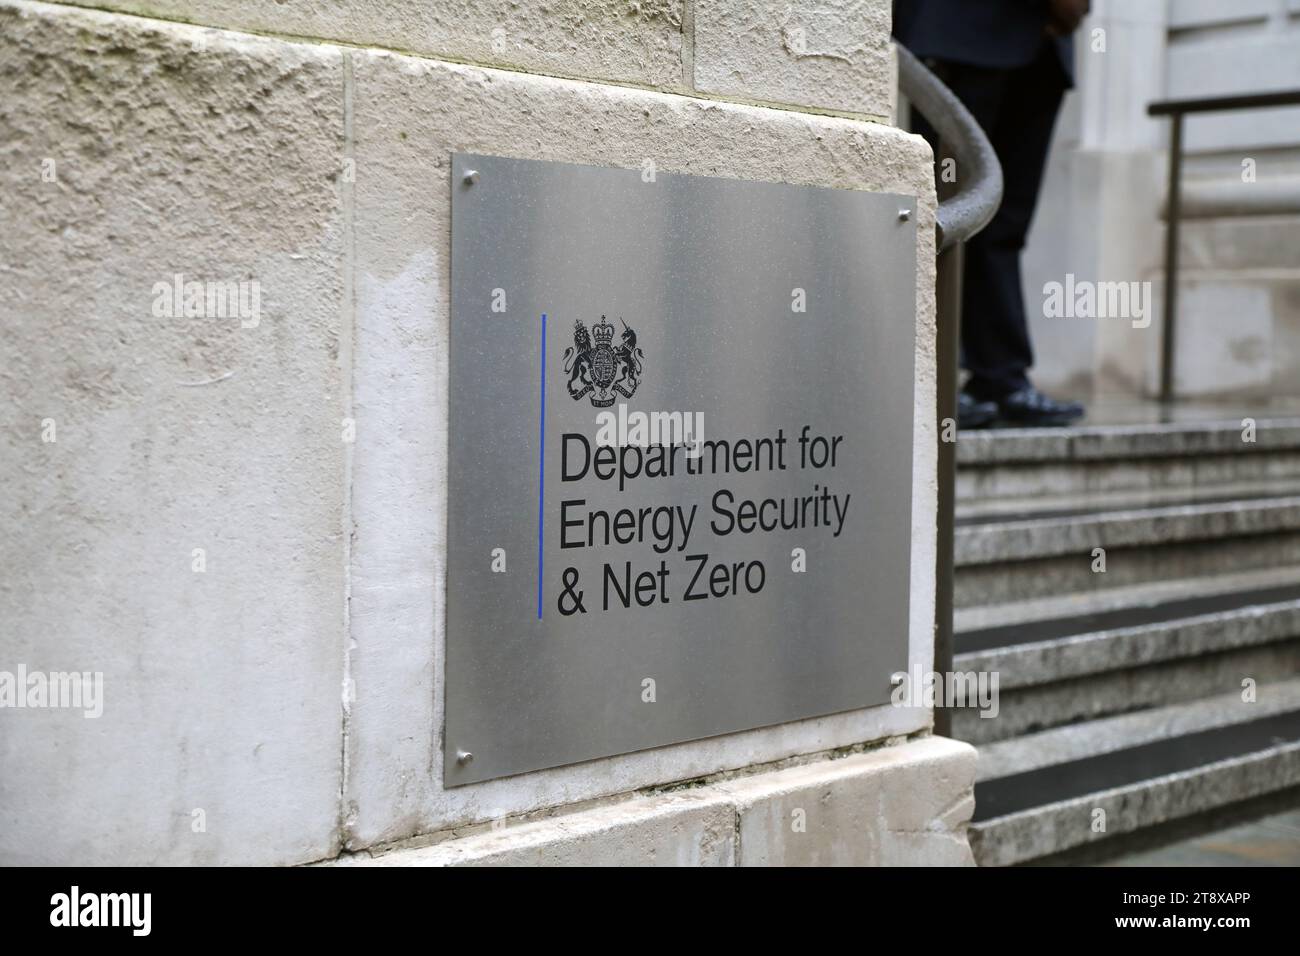 Londres, Reino Unido – 21 de noviembre de 2023: Entrada al Departamento de Seguridad Energética del Reino Unido y Net Zero, en el centro de Londres Foto de stock